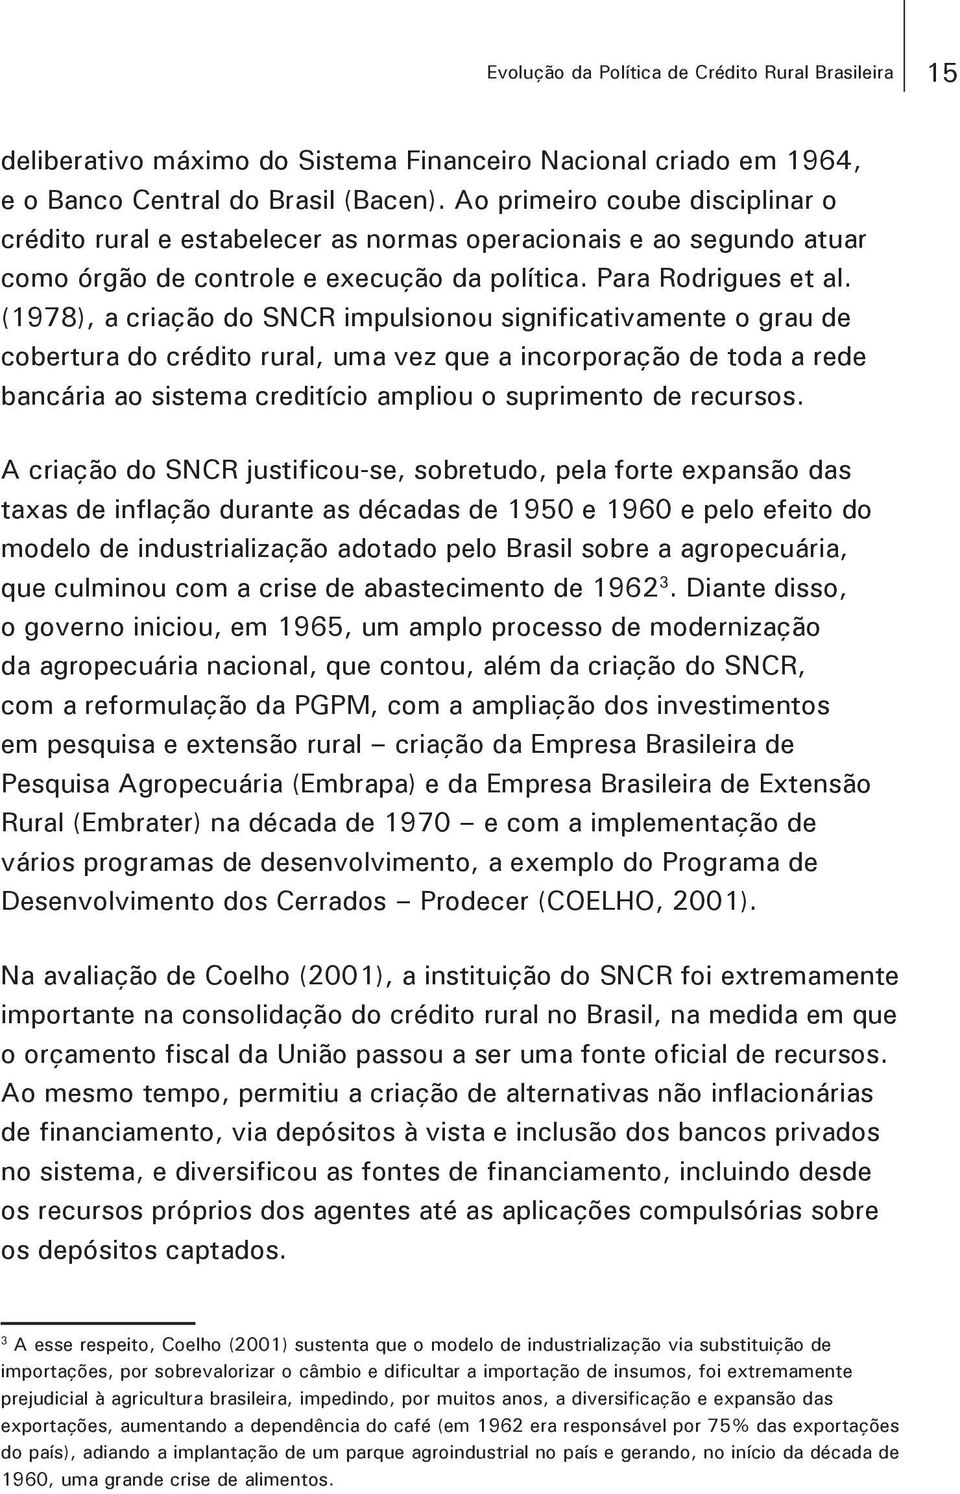 (1978), a criação do SNCR impulsionou significativamente o grau de cobertura do crédito rural, uma vez que a incorporação de toda a rede bancária ao sistema creditício ampliou o suprimento de